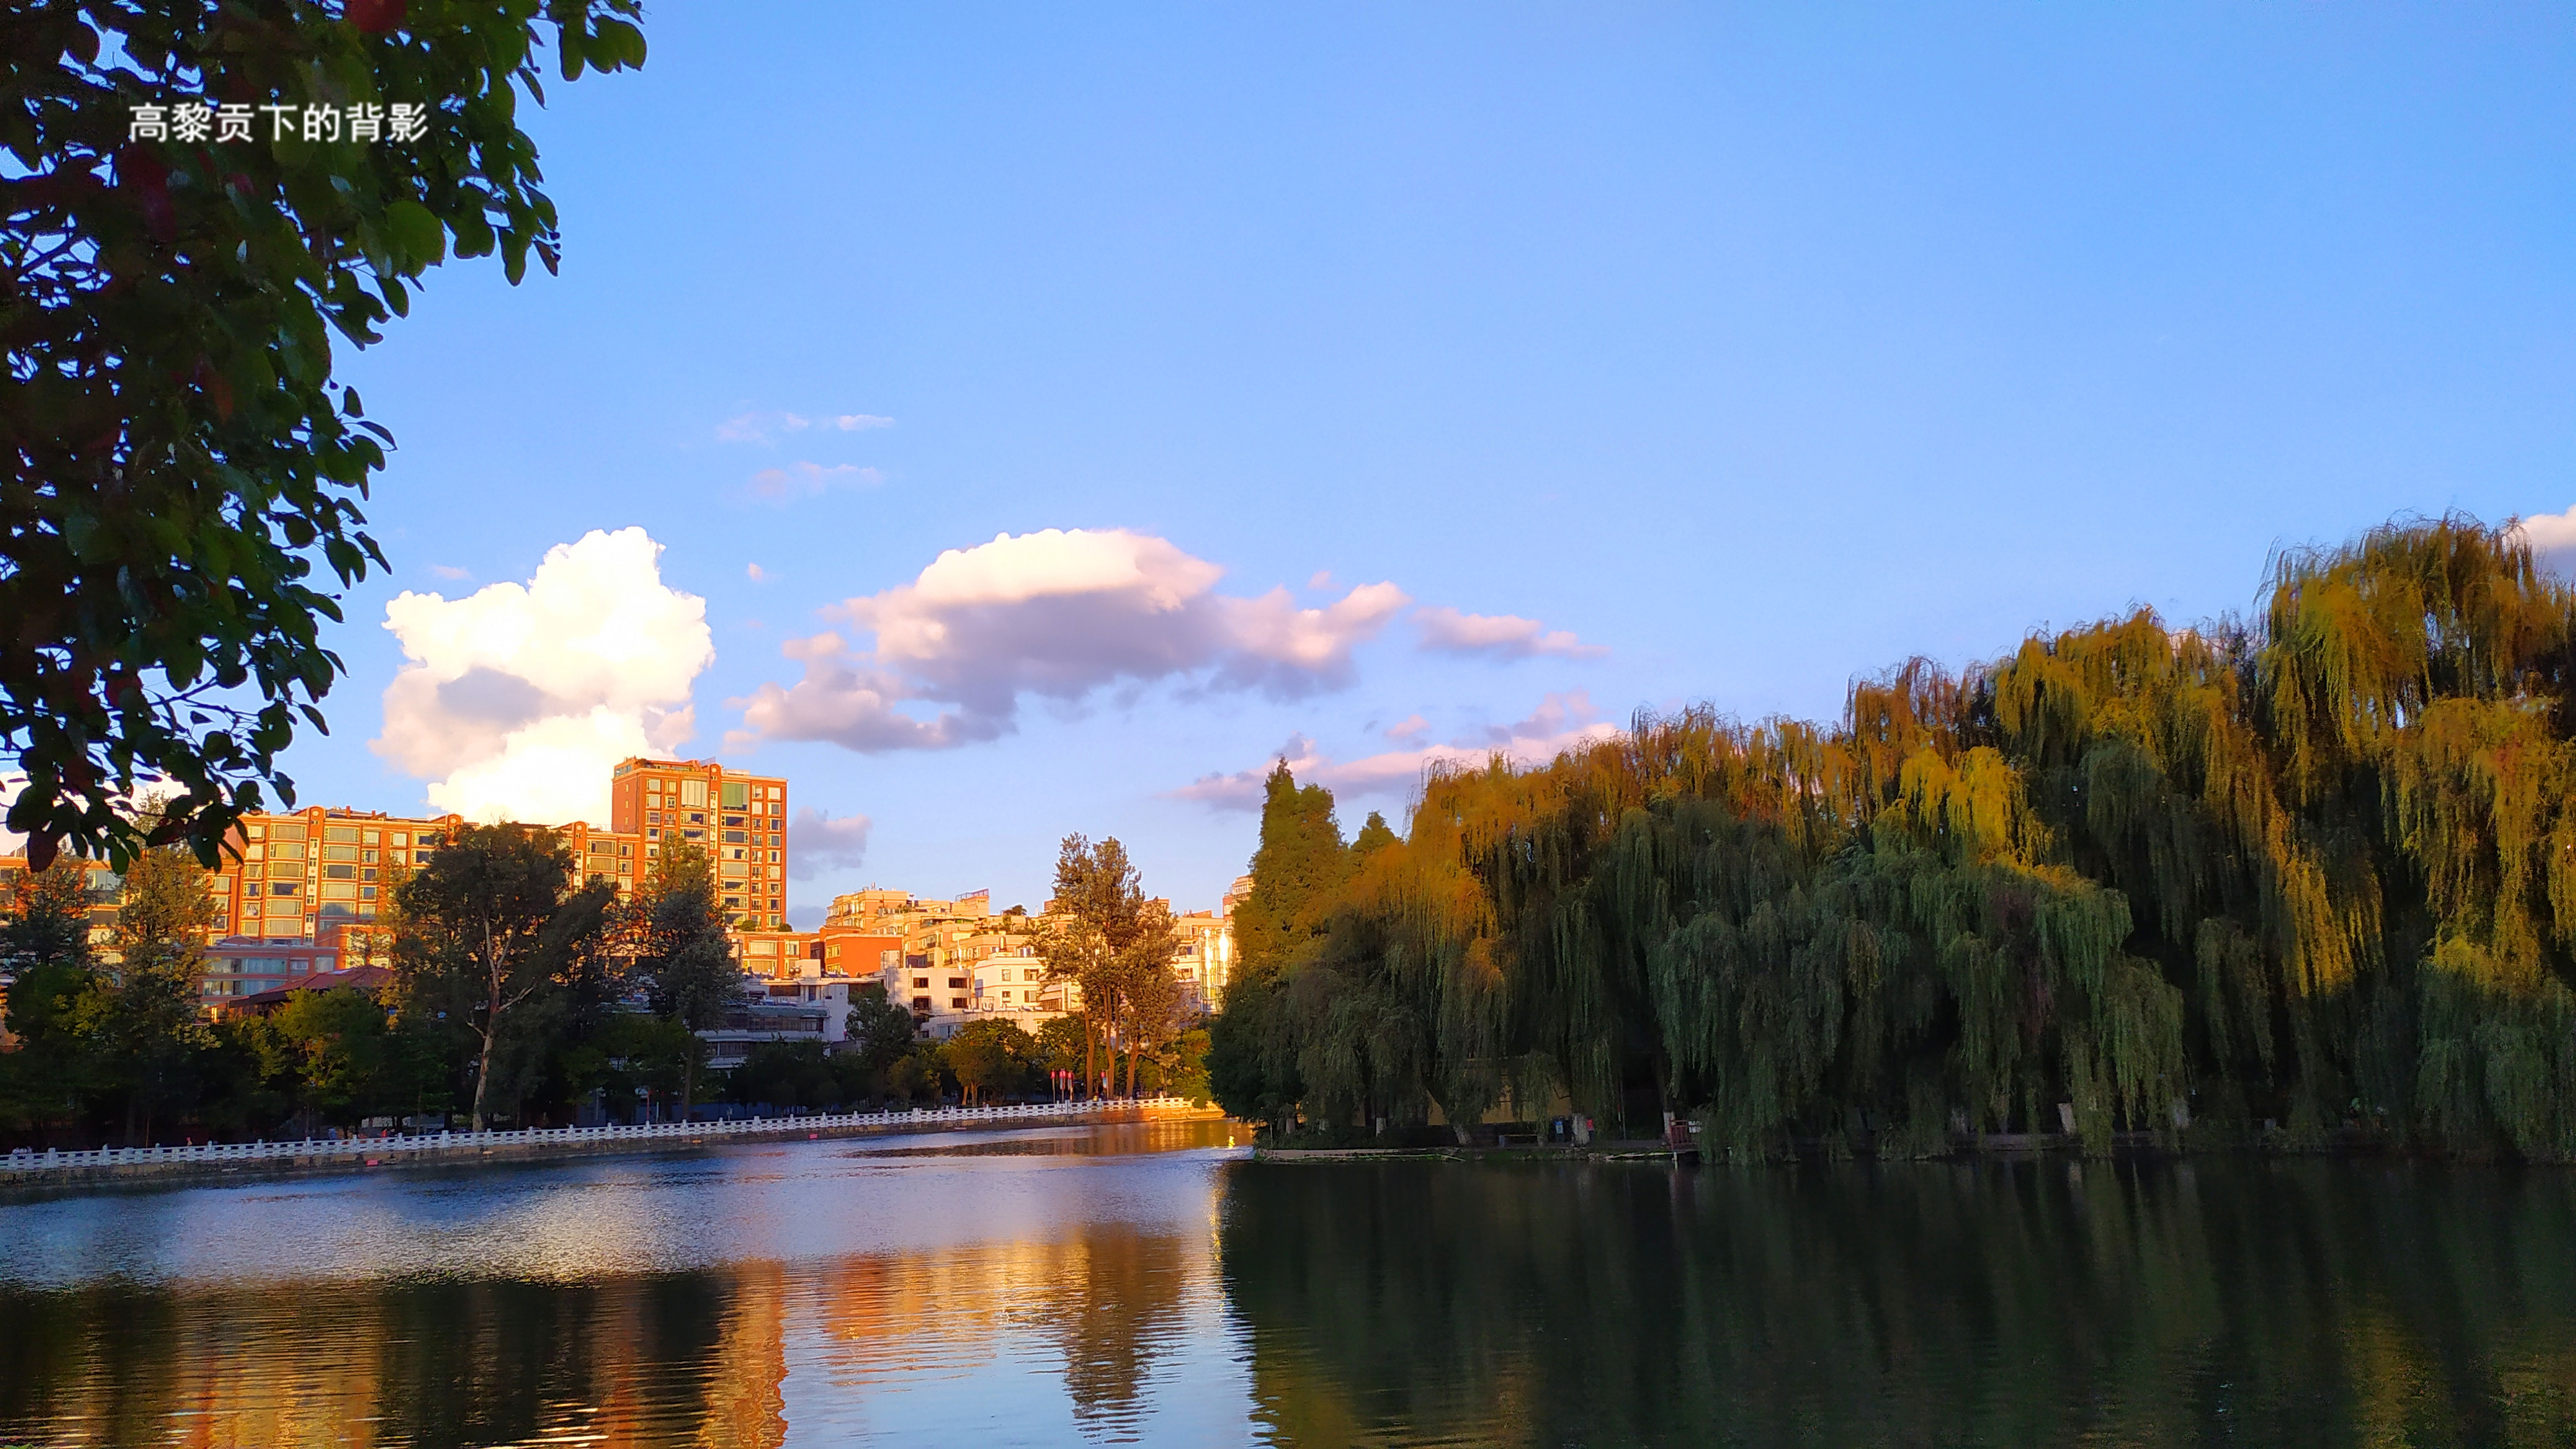 云南昆明翠湖公园随拍,蓝天白云下的美丽景色,置身其中如画中游